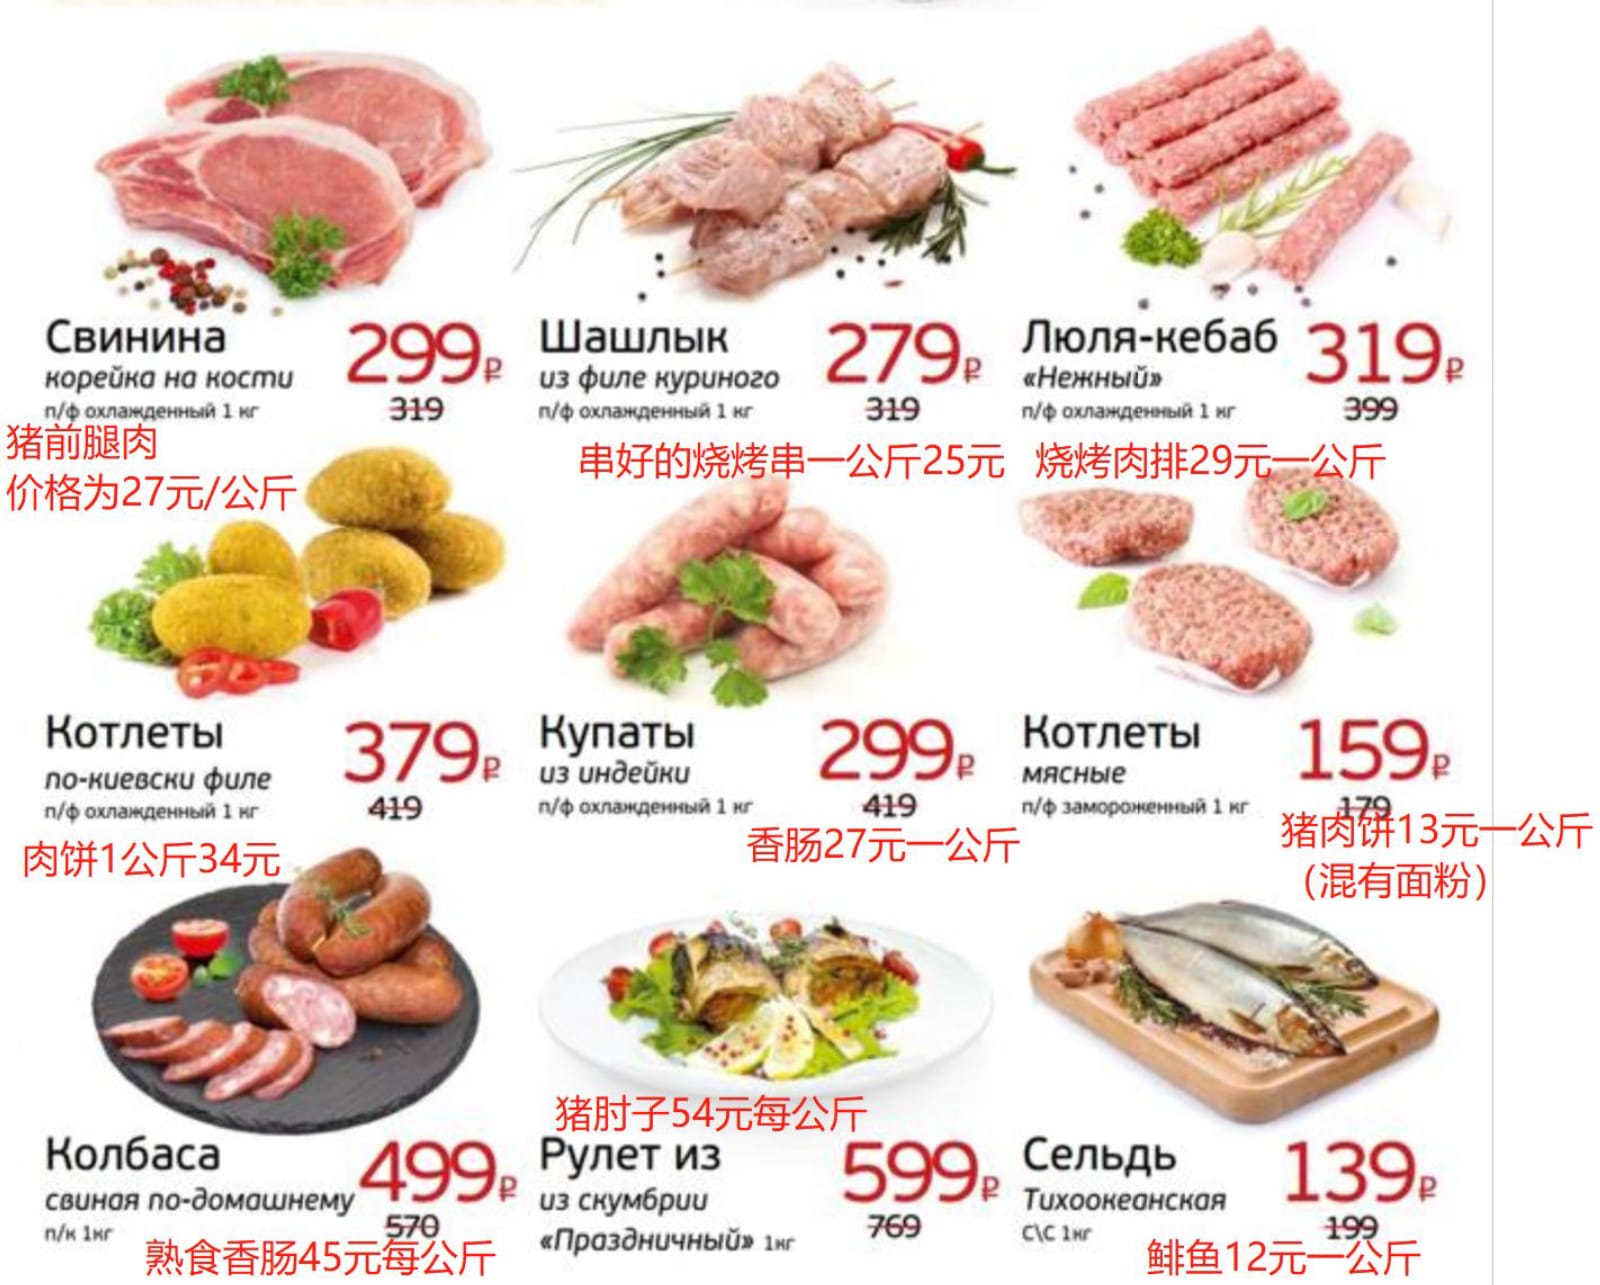 肉类清单|俄罗斯留学物价|俄罗斯超市物价|俄罗斯留学